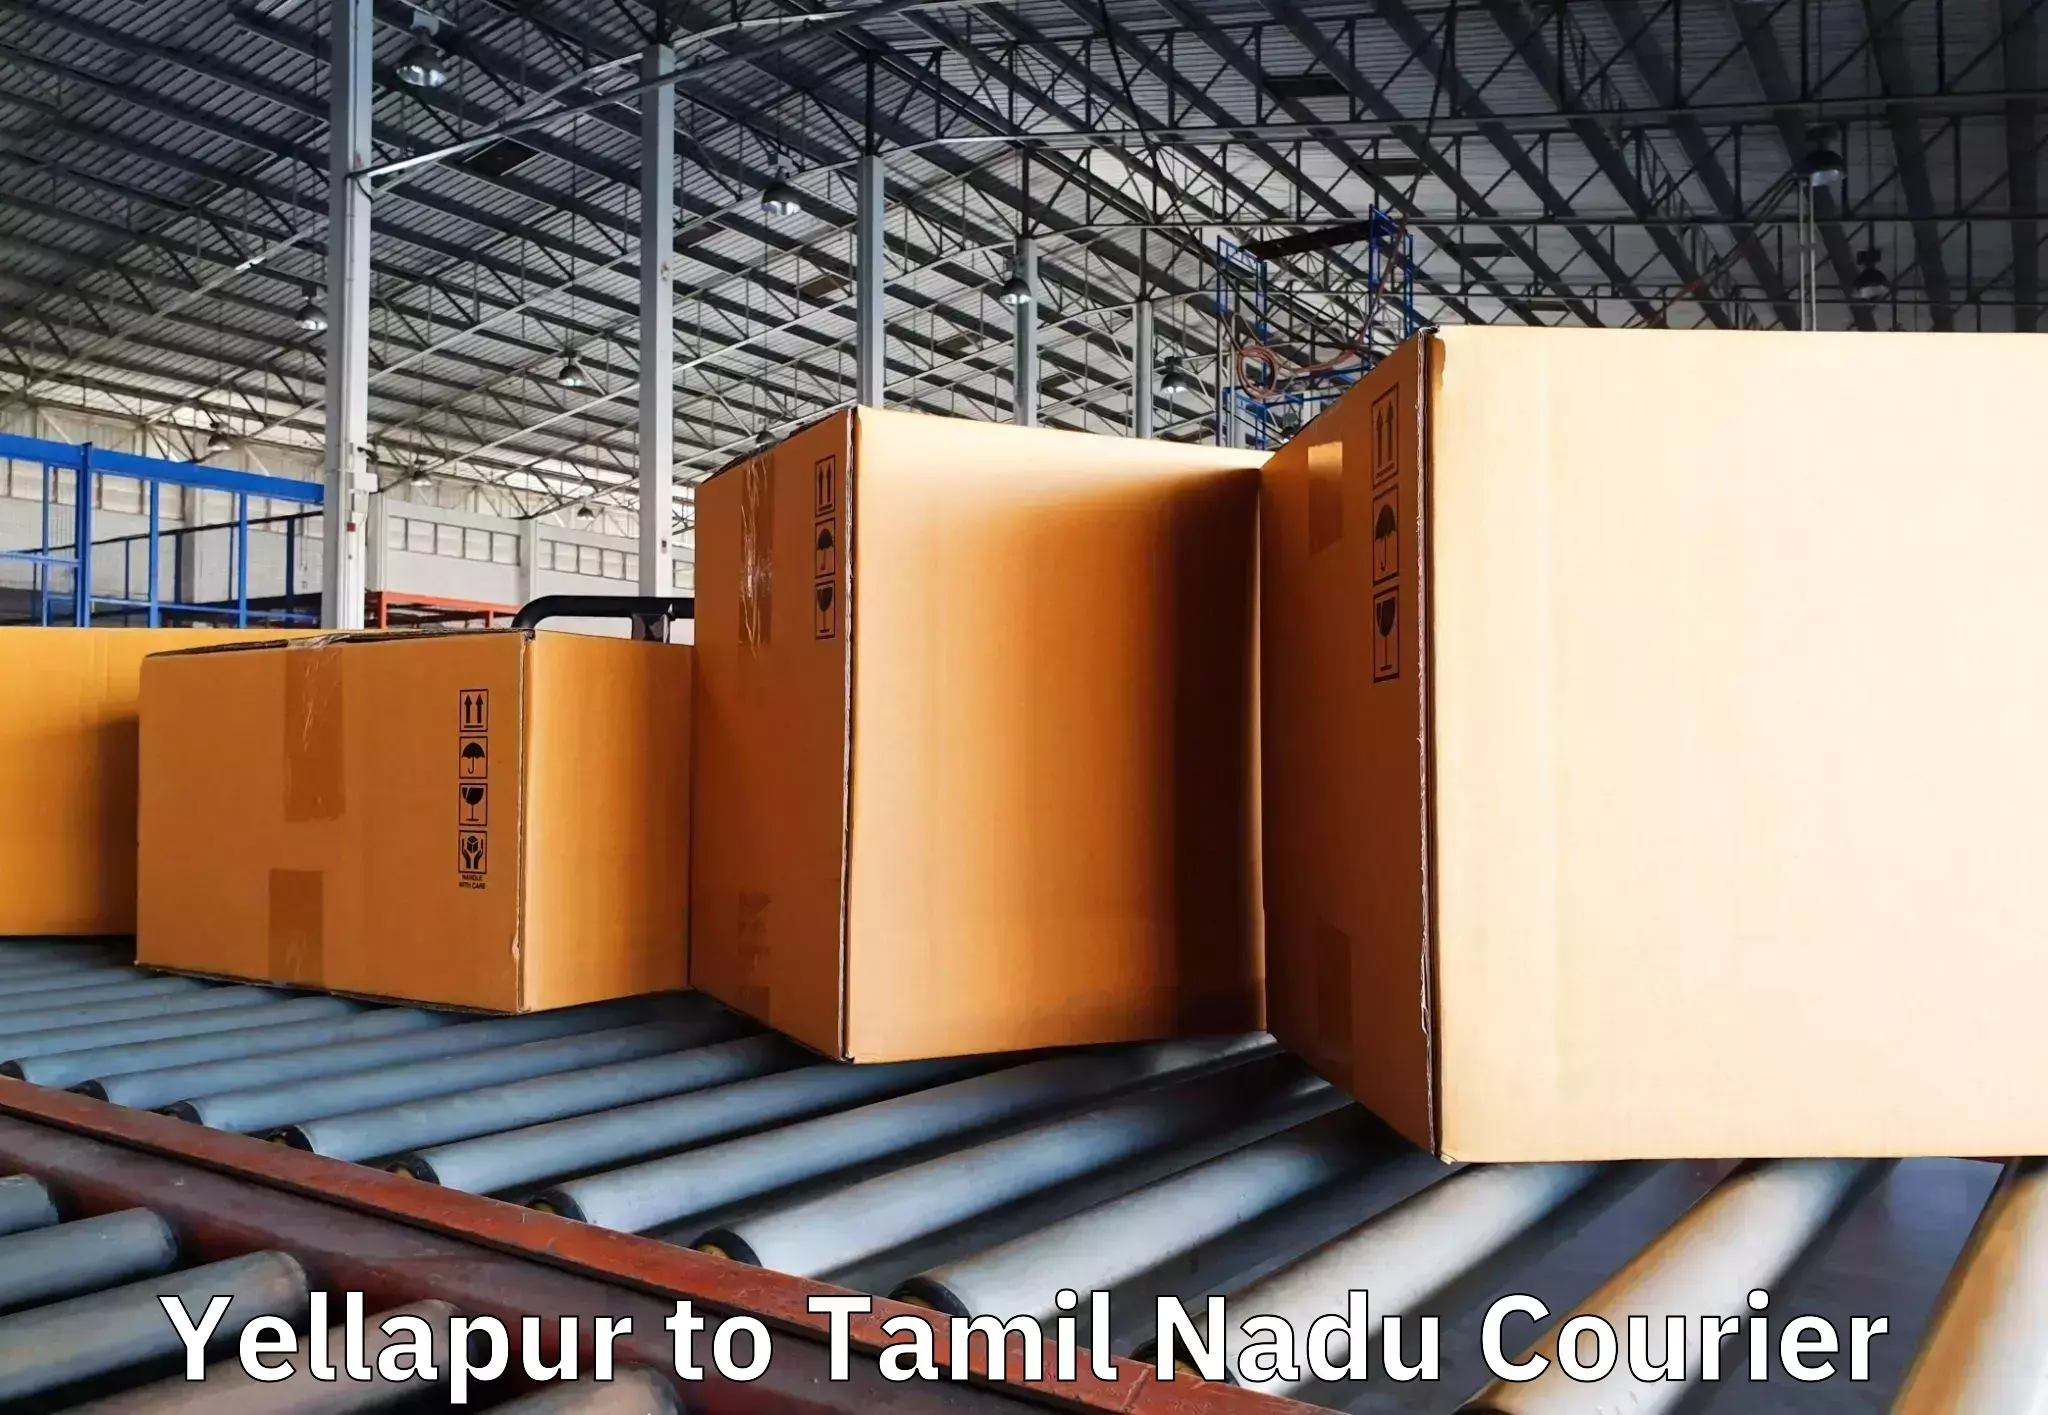 Furniture moving experts Yellapur to Thirukoilure